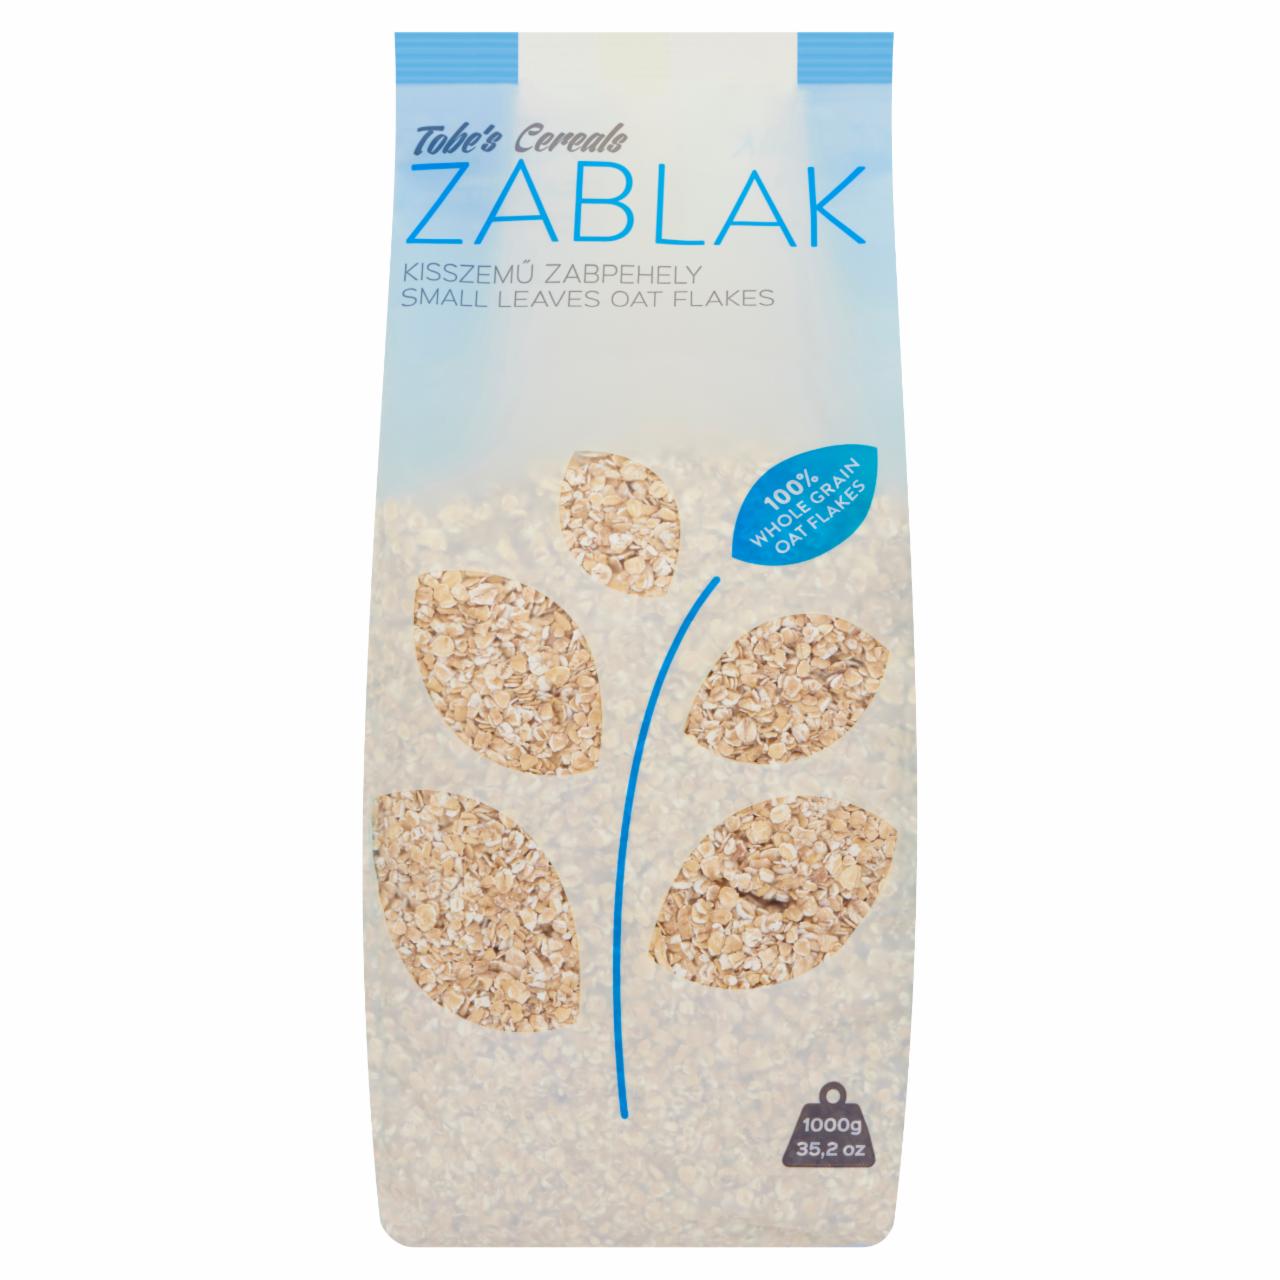 Képek - Tobe's Cereals Zablak kisszemű natúr zabpehely 1000 g